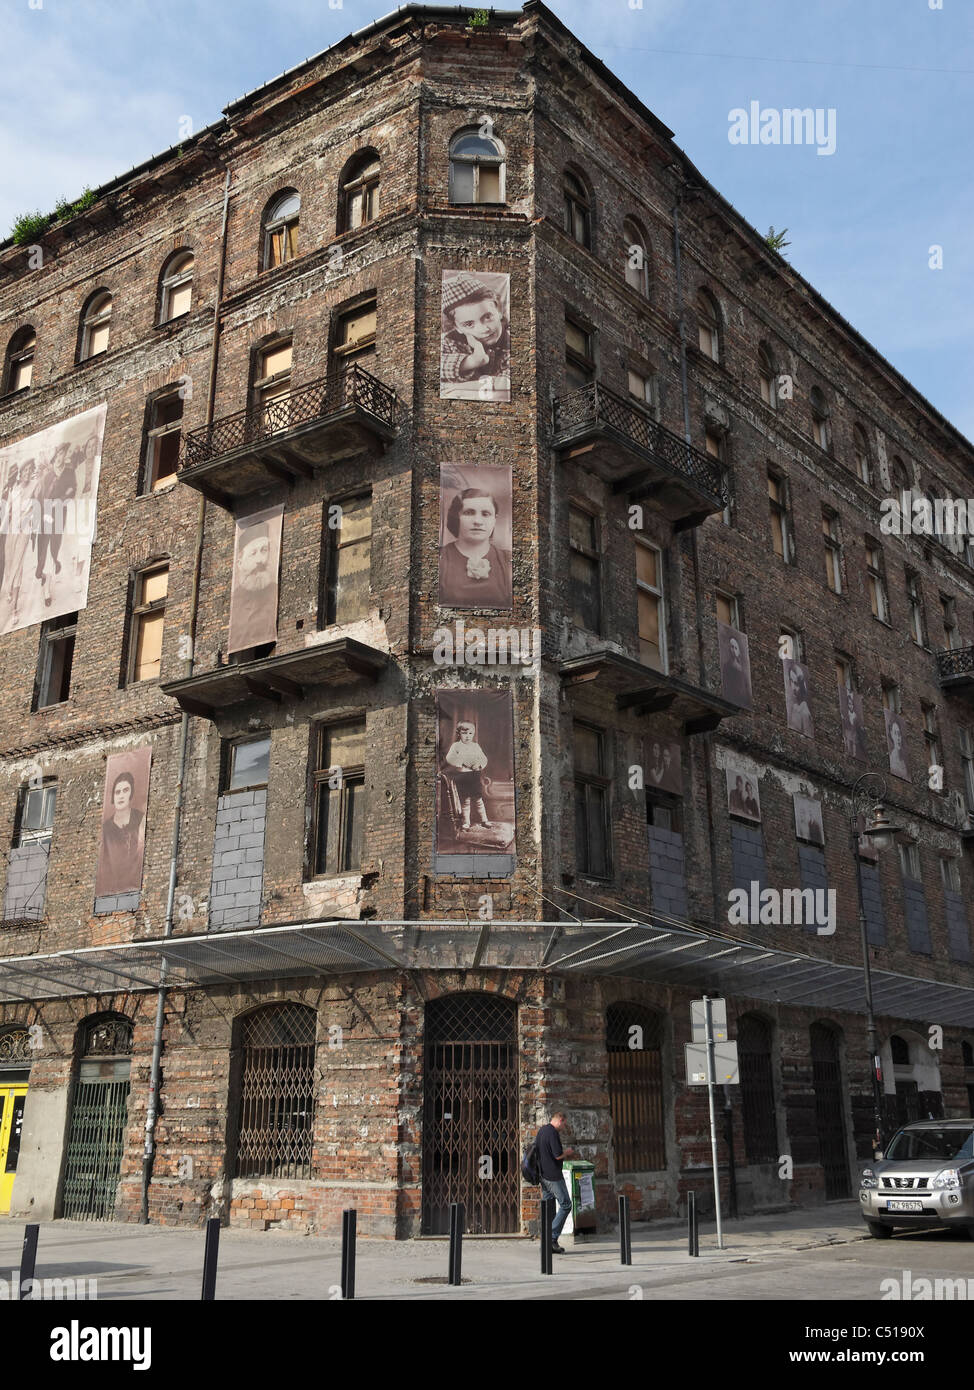 Eines der übrigen Gebäude des jüdischen Ghettos in Warschau, Polen. Fotos von ehemaligen Insassen sind an den Wänden befestigt. Stockfoto